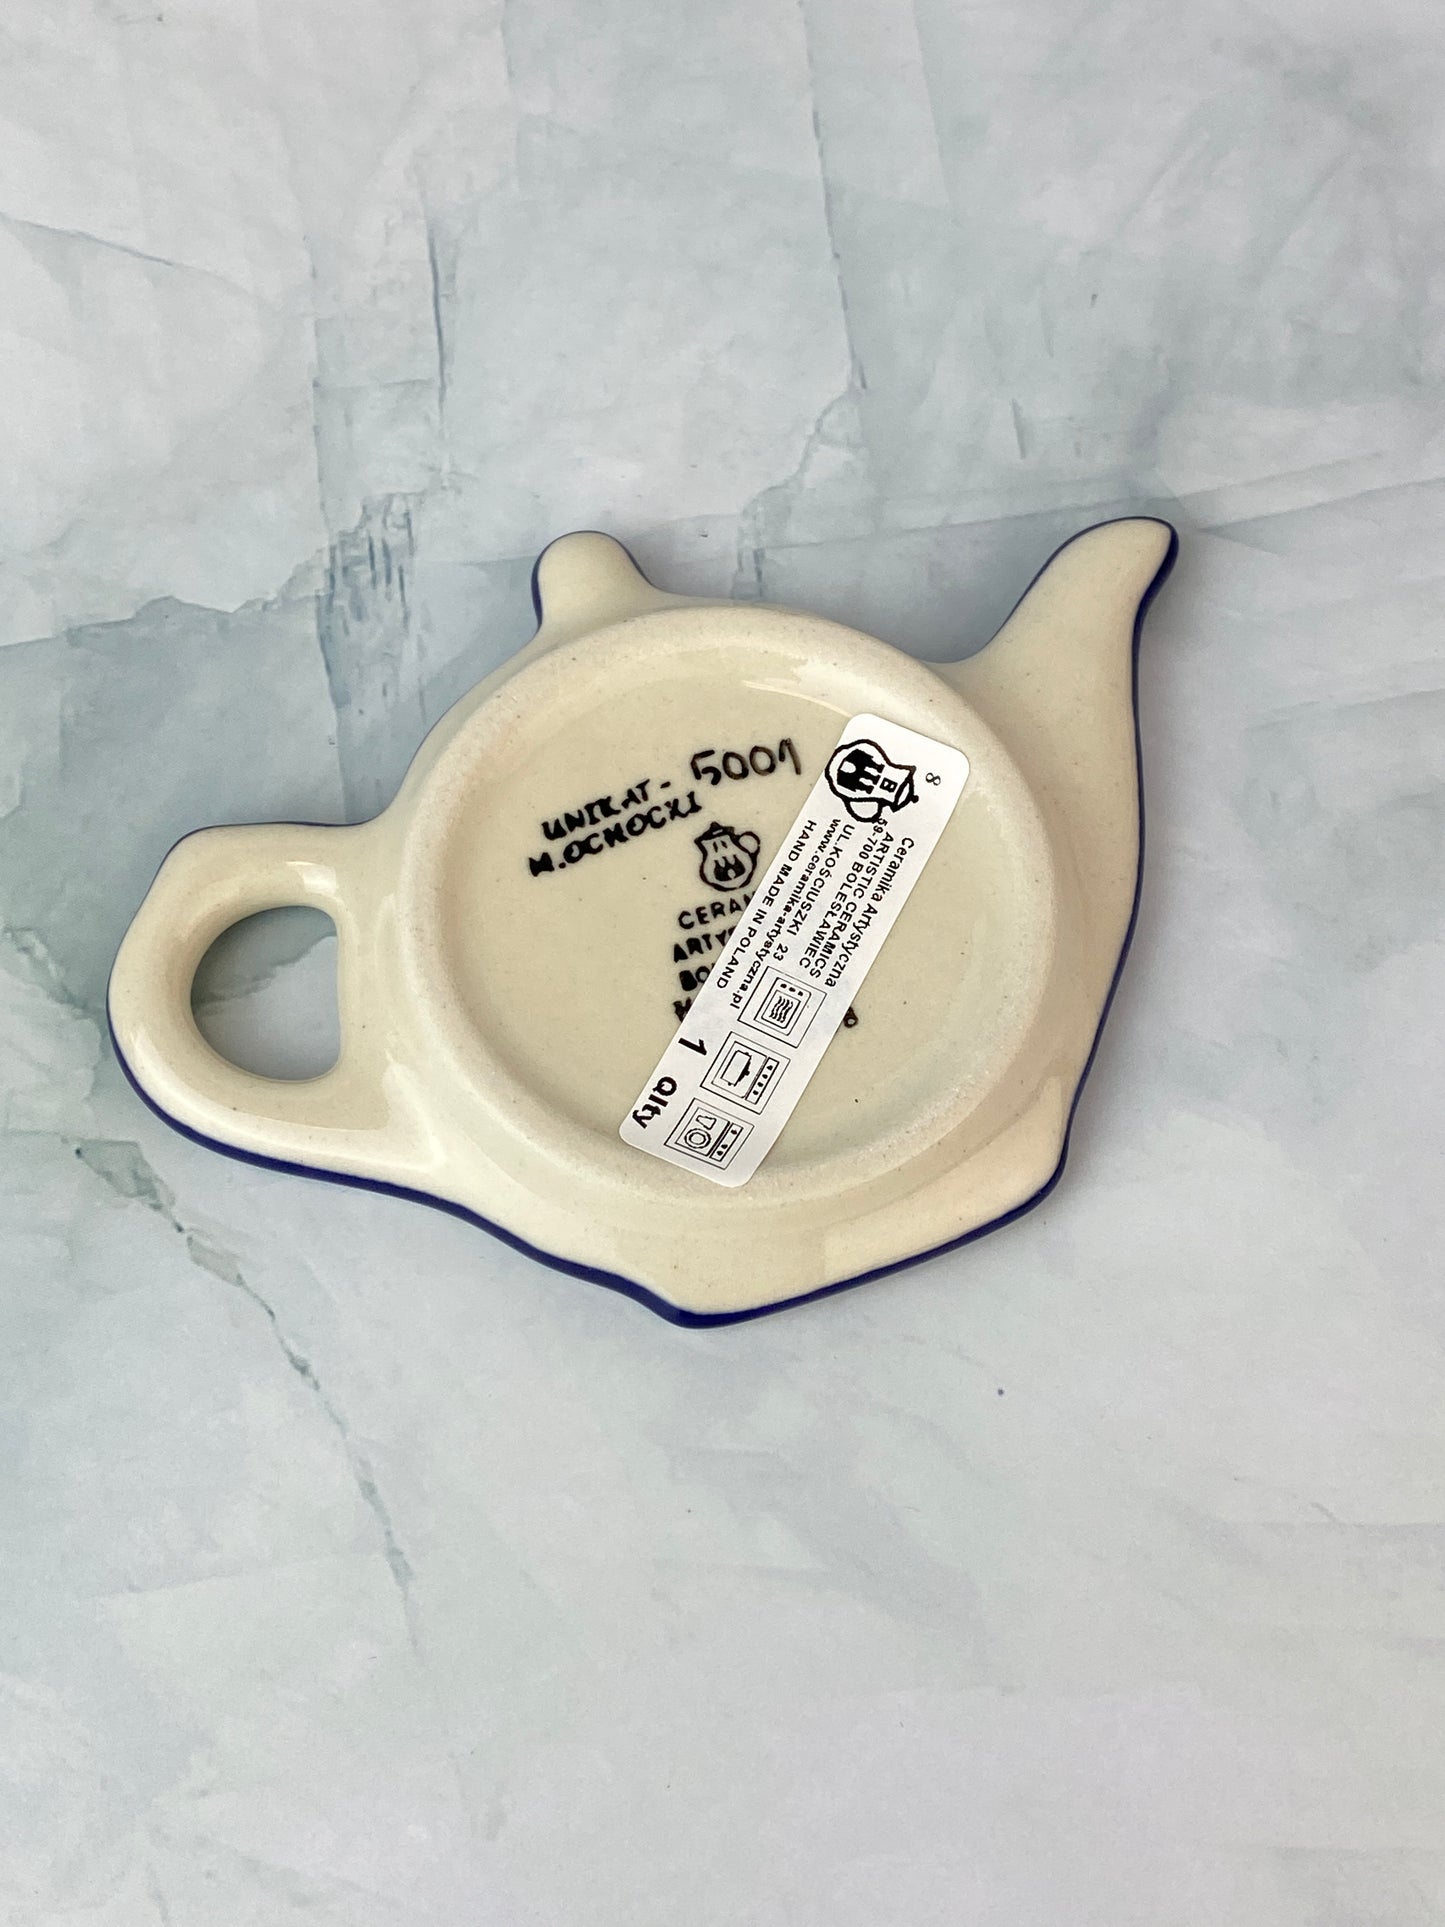 SALE Unikat Tea Bag Holder - Shape 766 - Pattern U5001